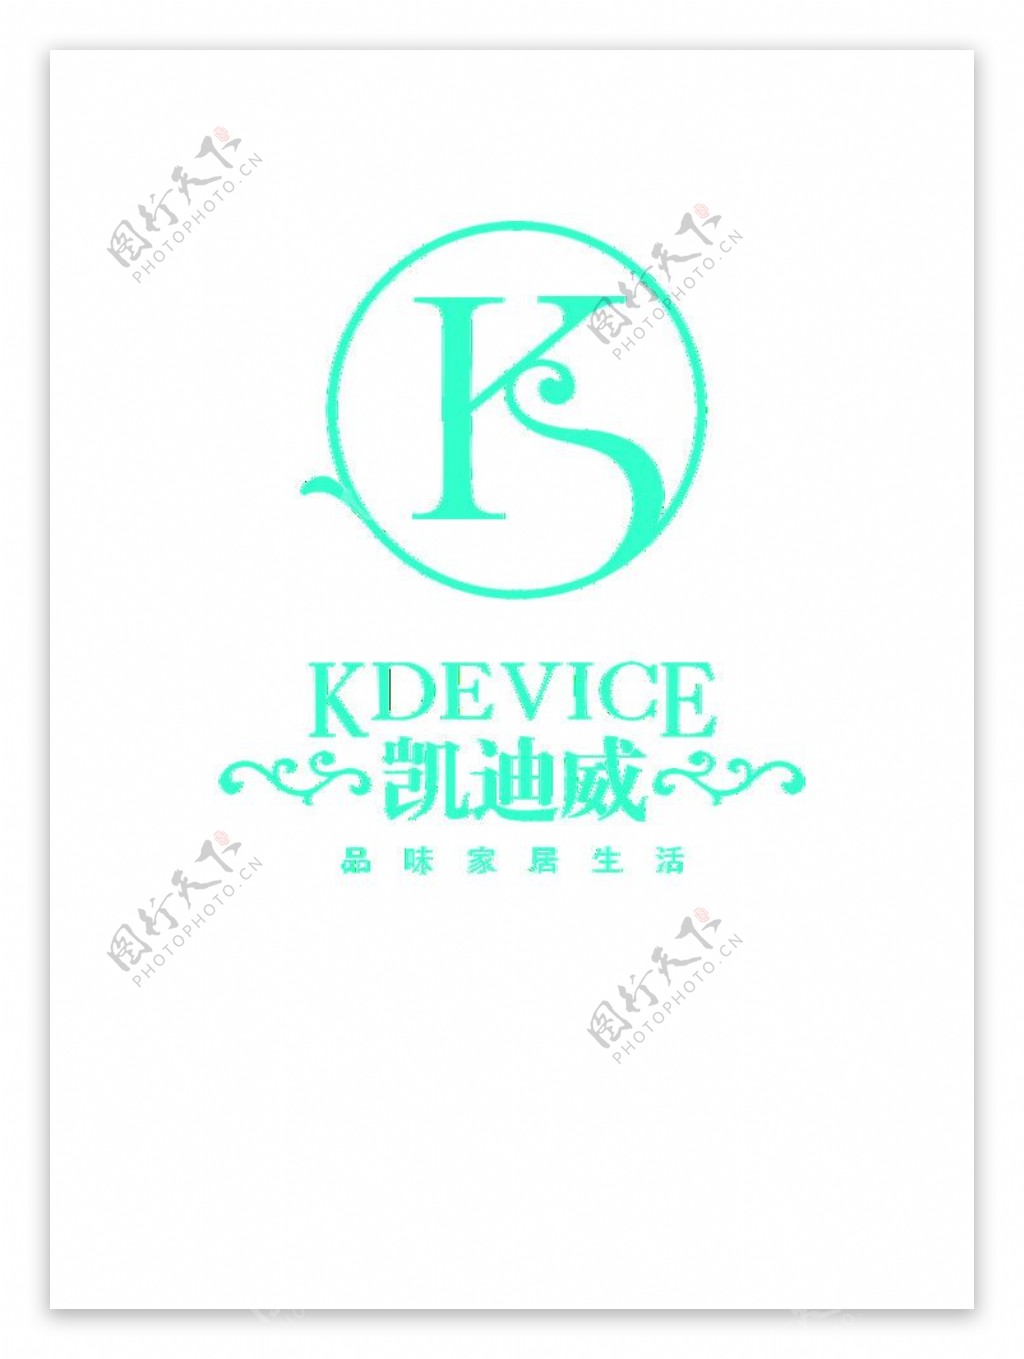 凯迪威logo图片